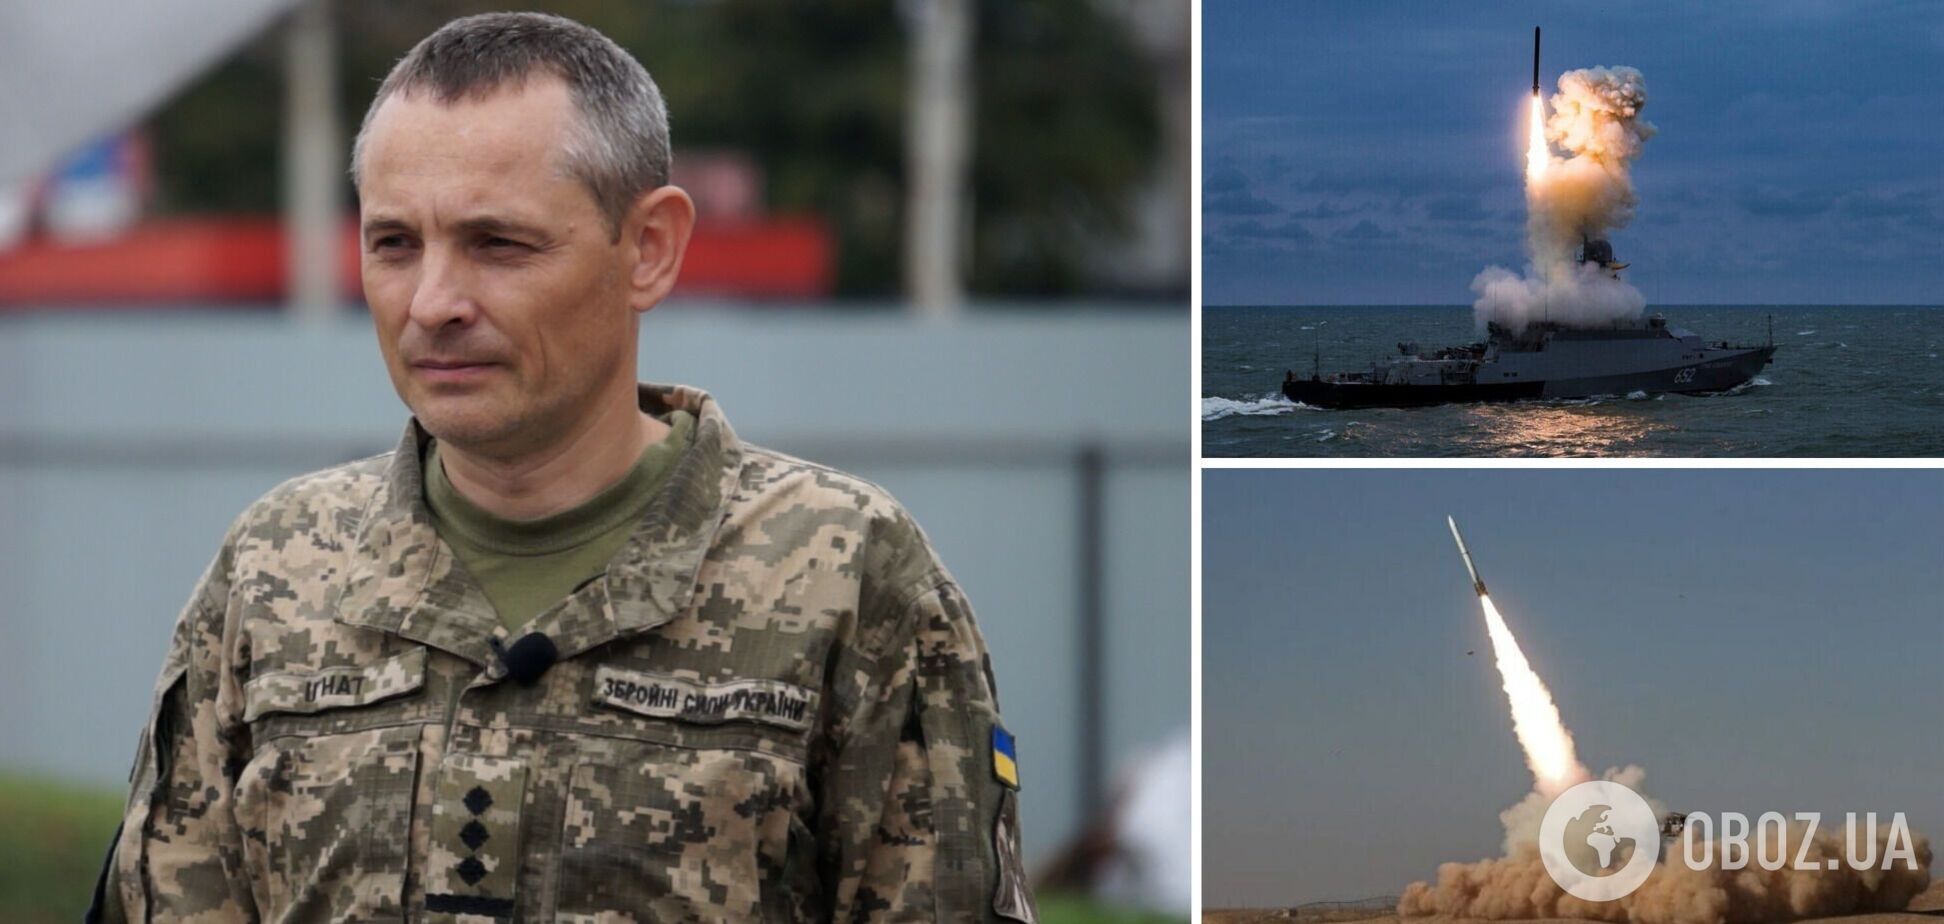 'Небо под надежной защитой': в Воздушных силах рассказали, чем отражали  атаки дронов по Украине на Новый год